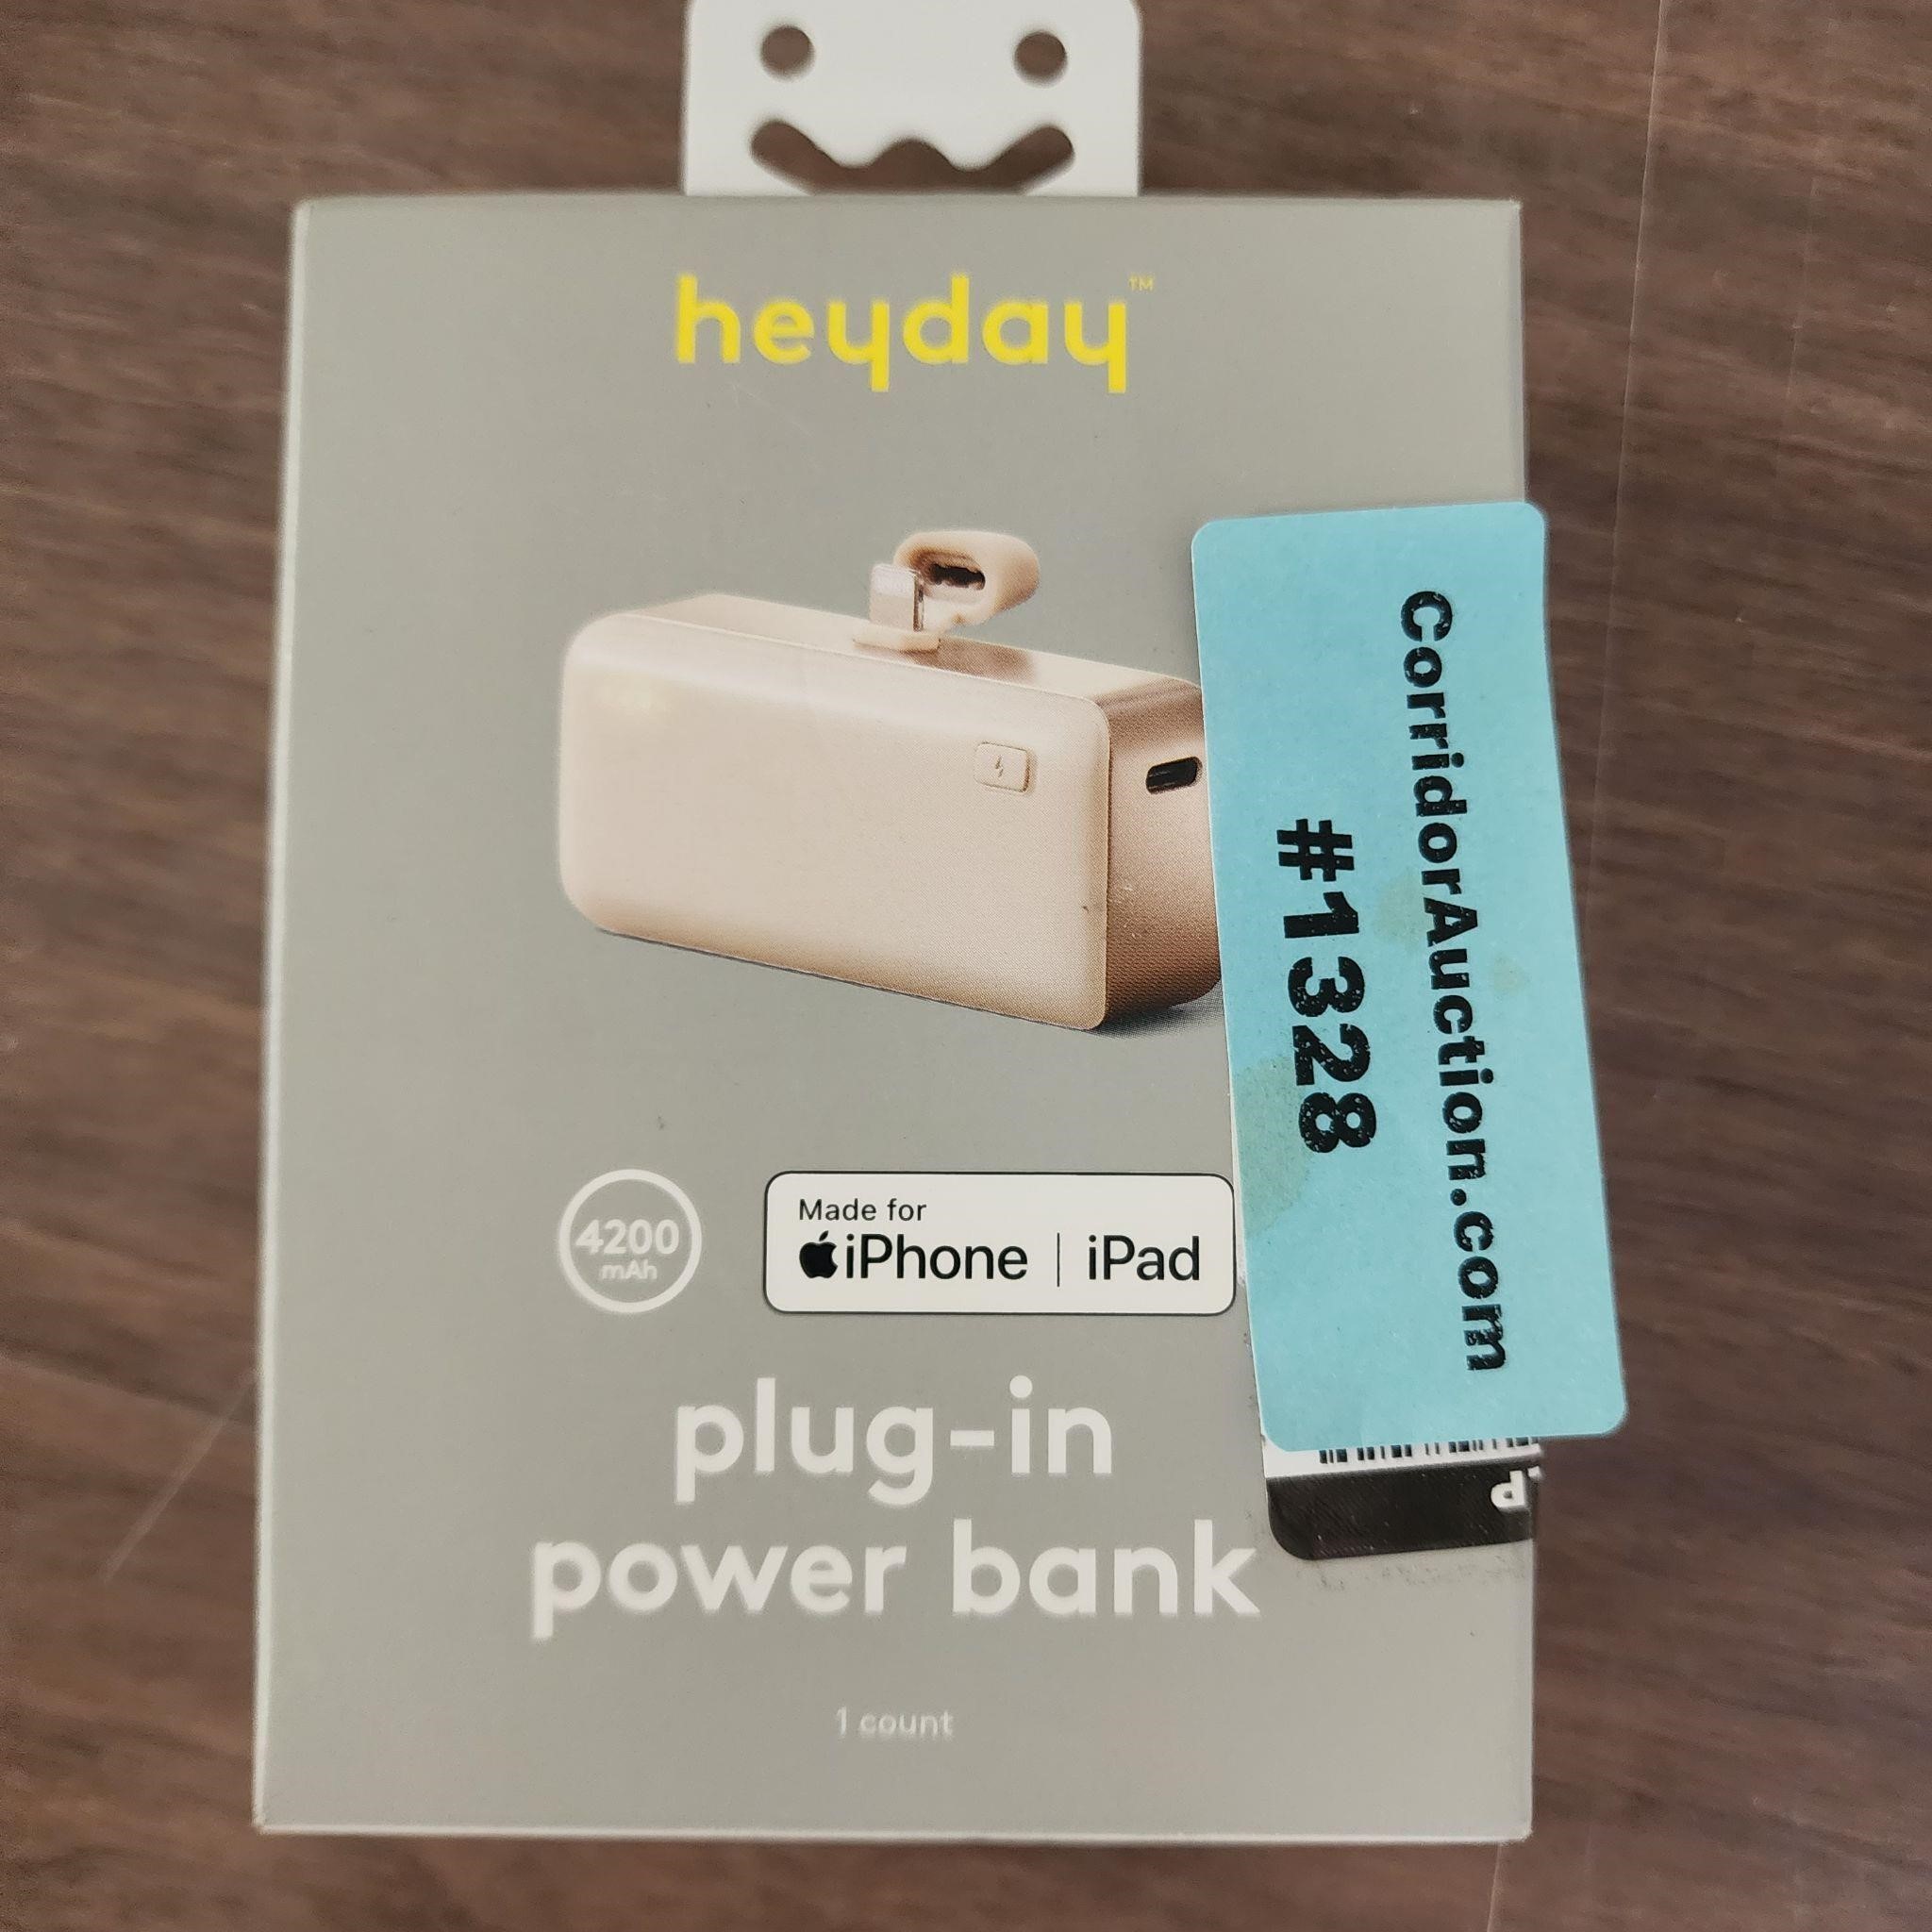 Plug-in Power Bank 4200mah iPhone/iPad